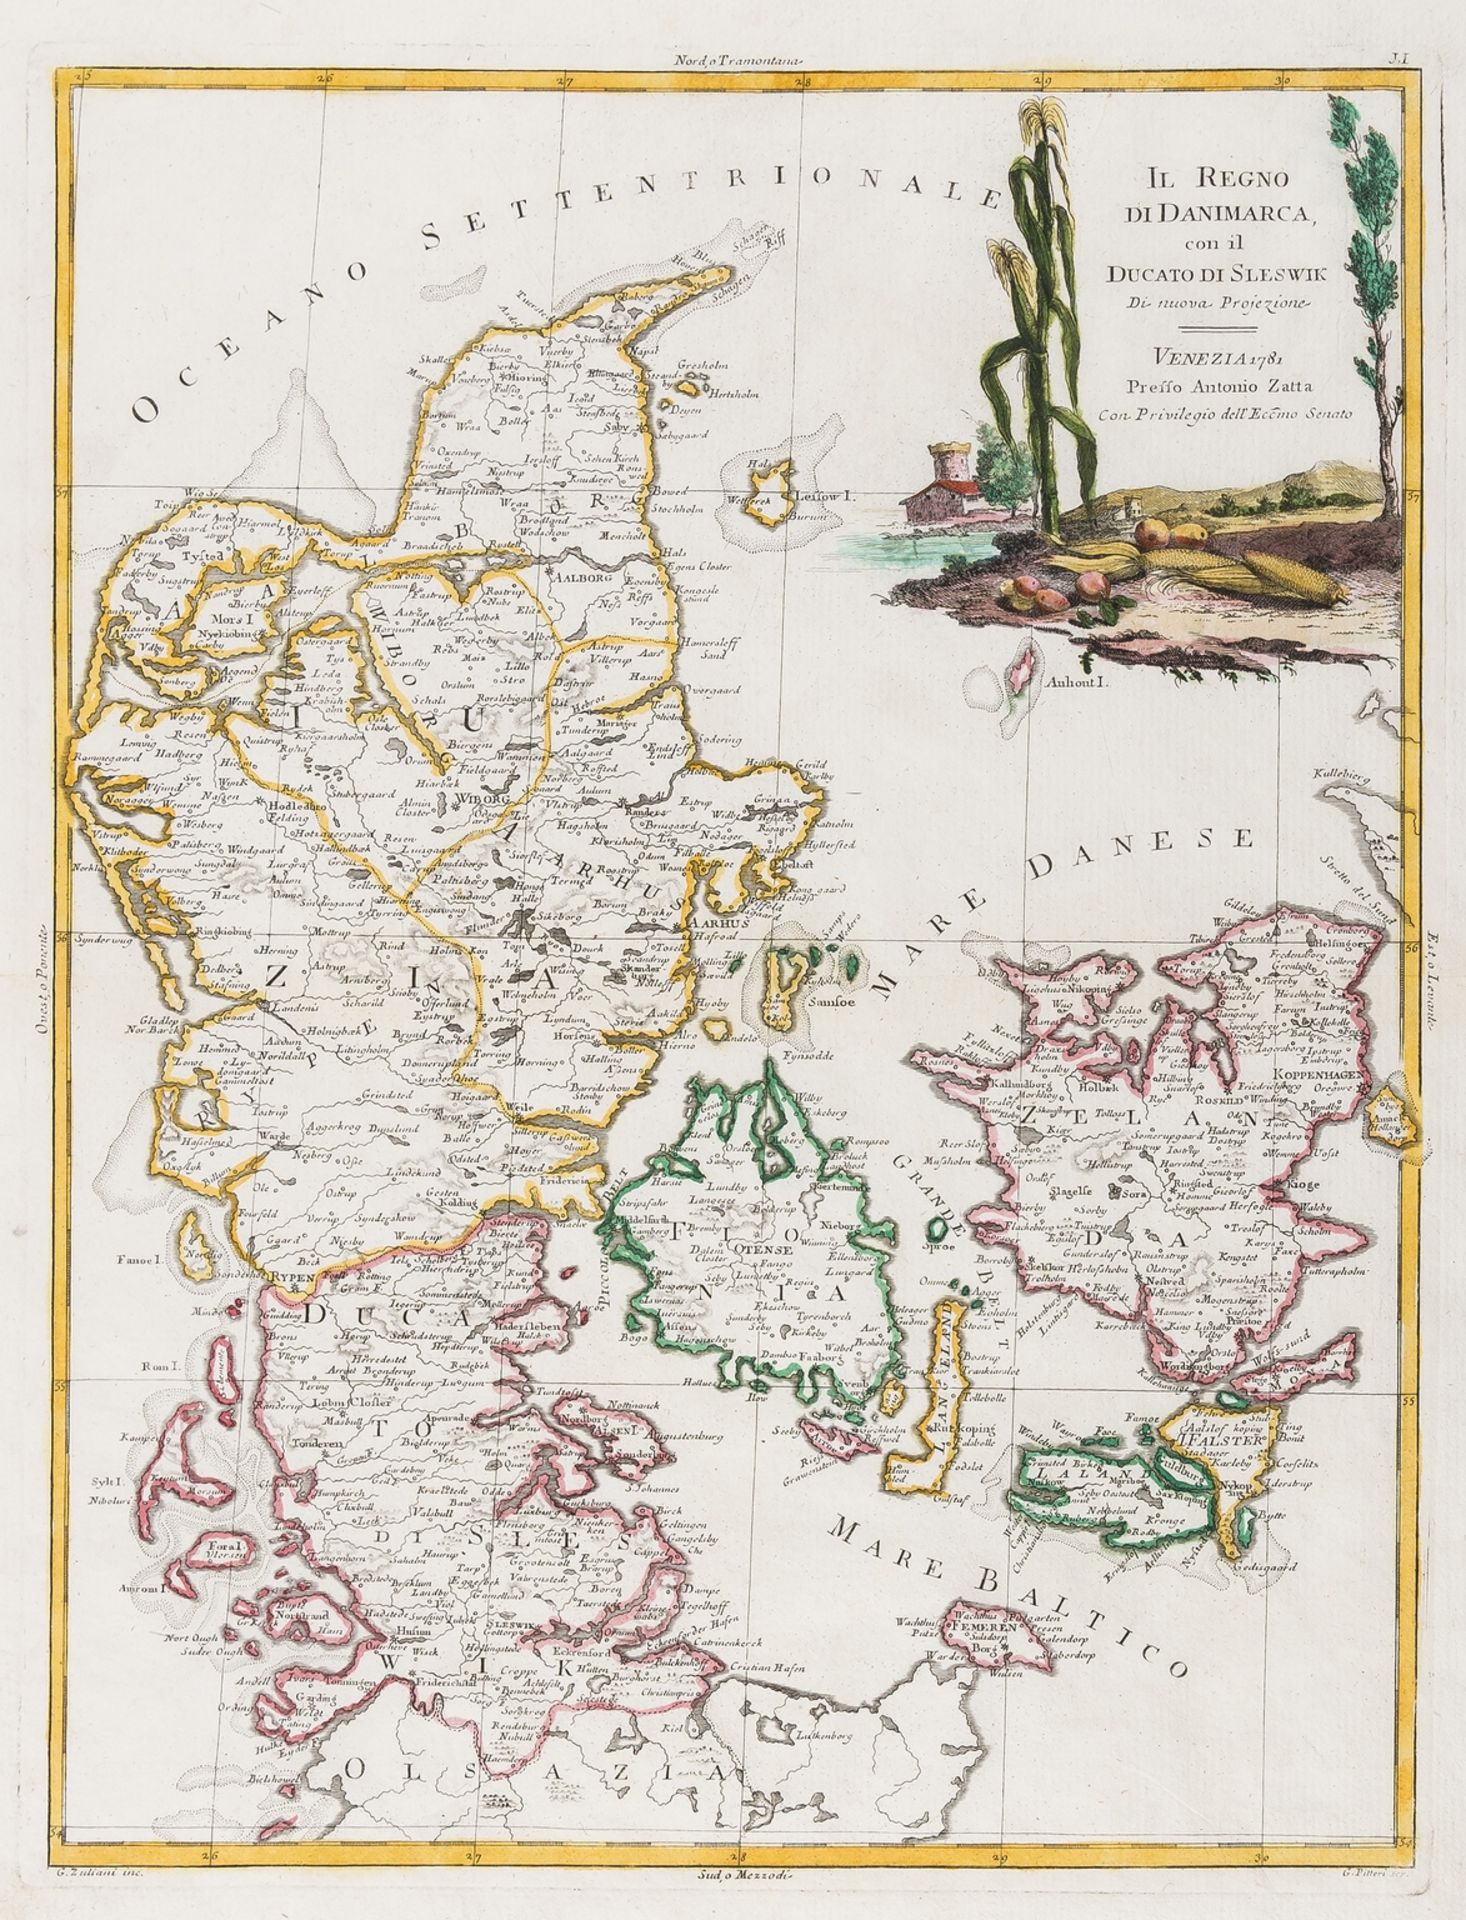 Denmark.- Zatta (Antonio) Il Regno di Danimarca con il ducato di Sleswik, 1781.